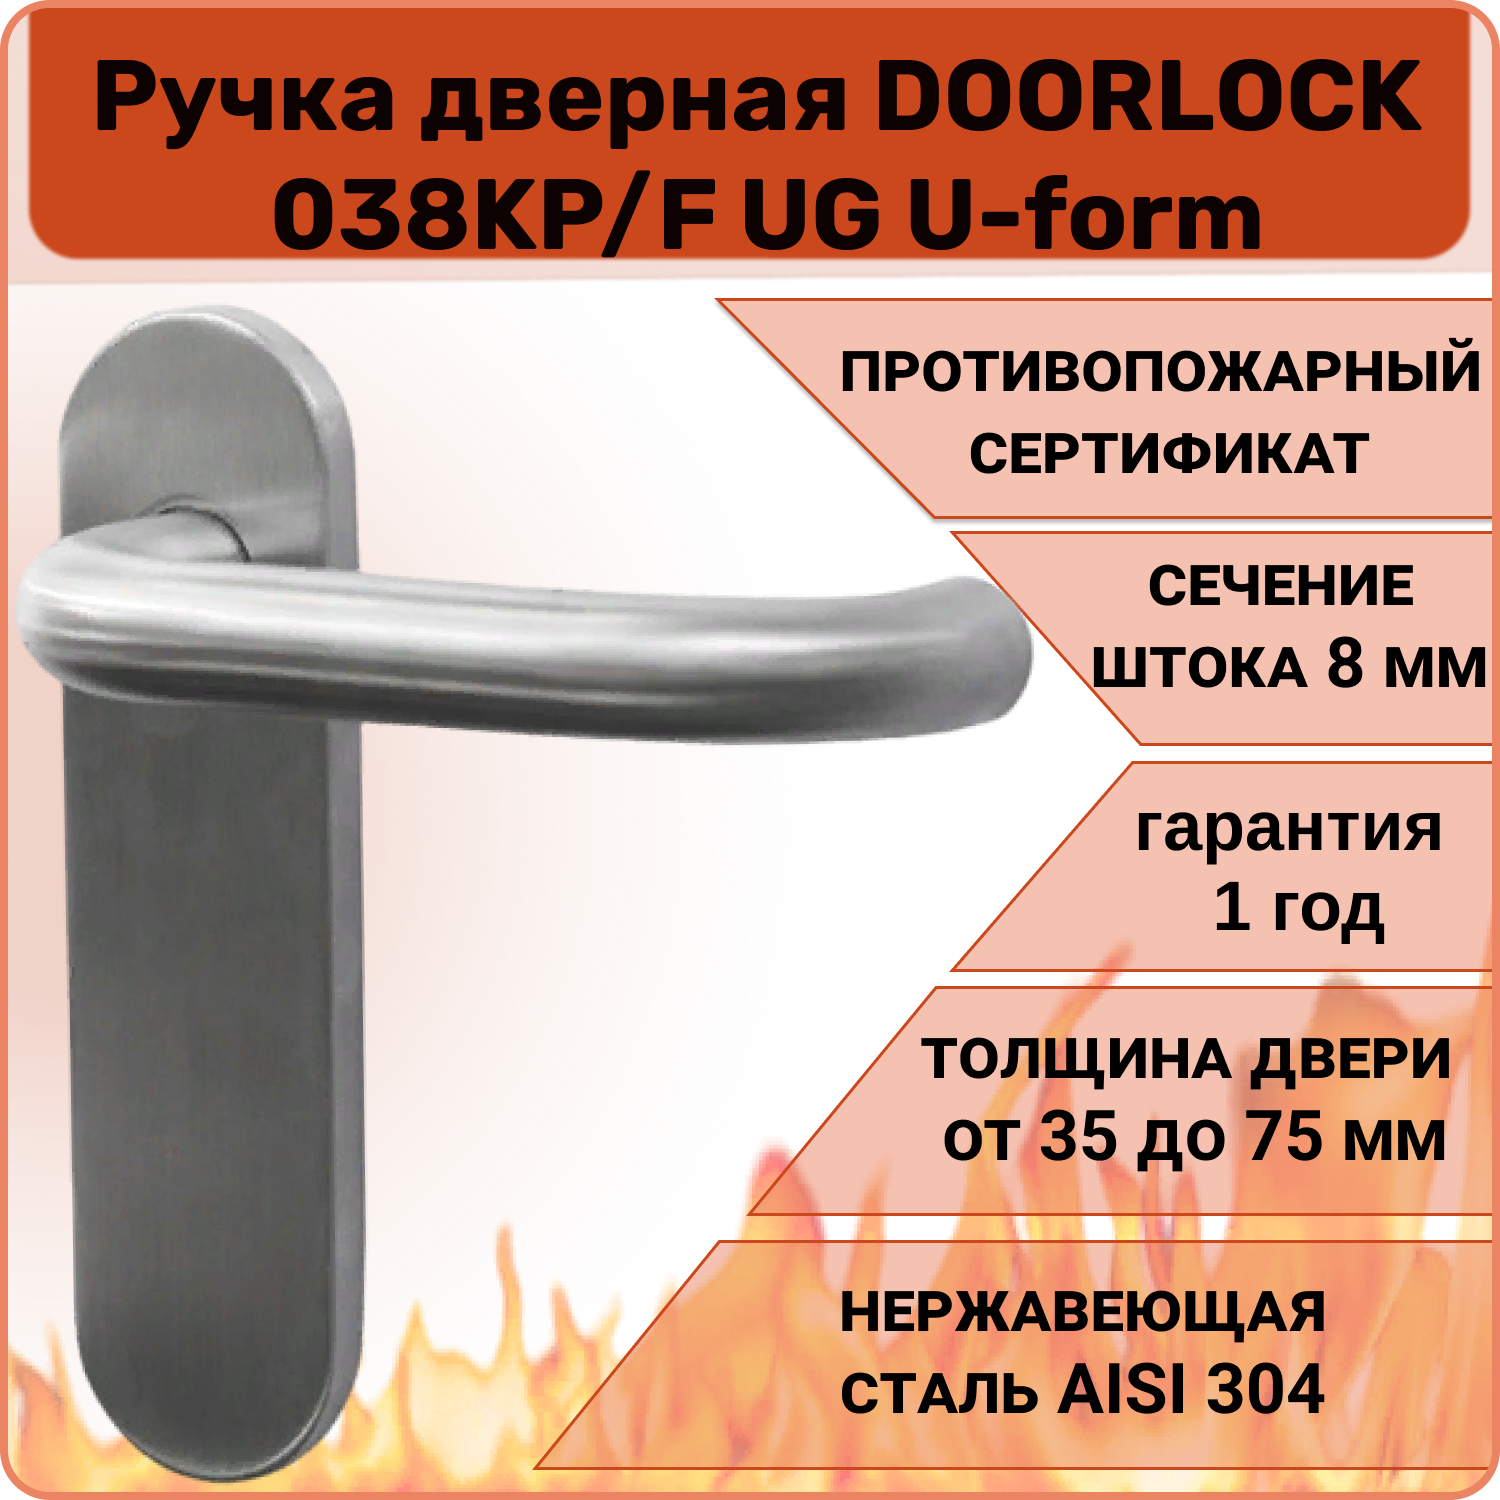 Ручка дверная противопожарная DOORLOCK 038KP/F UG U-form, матовая нержавеющая сталь